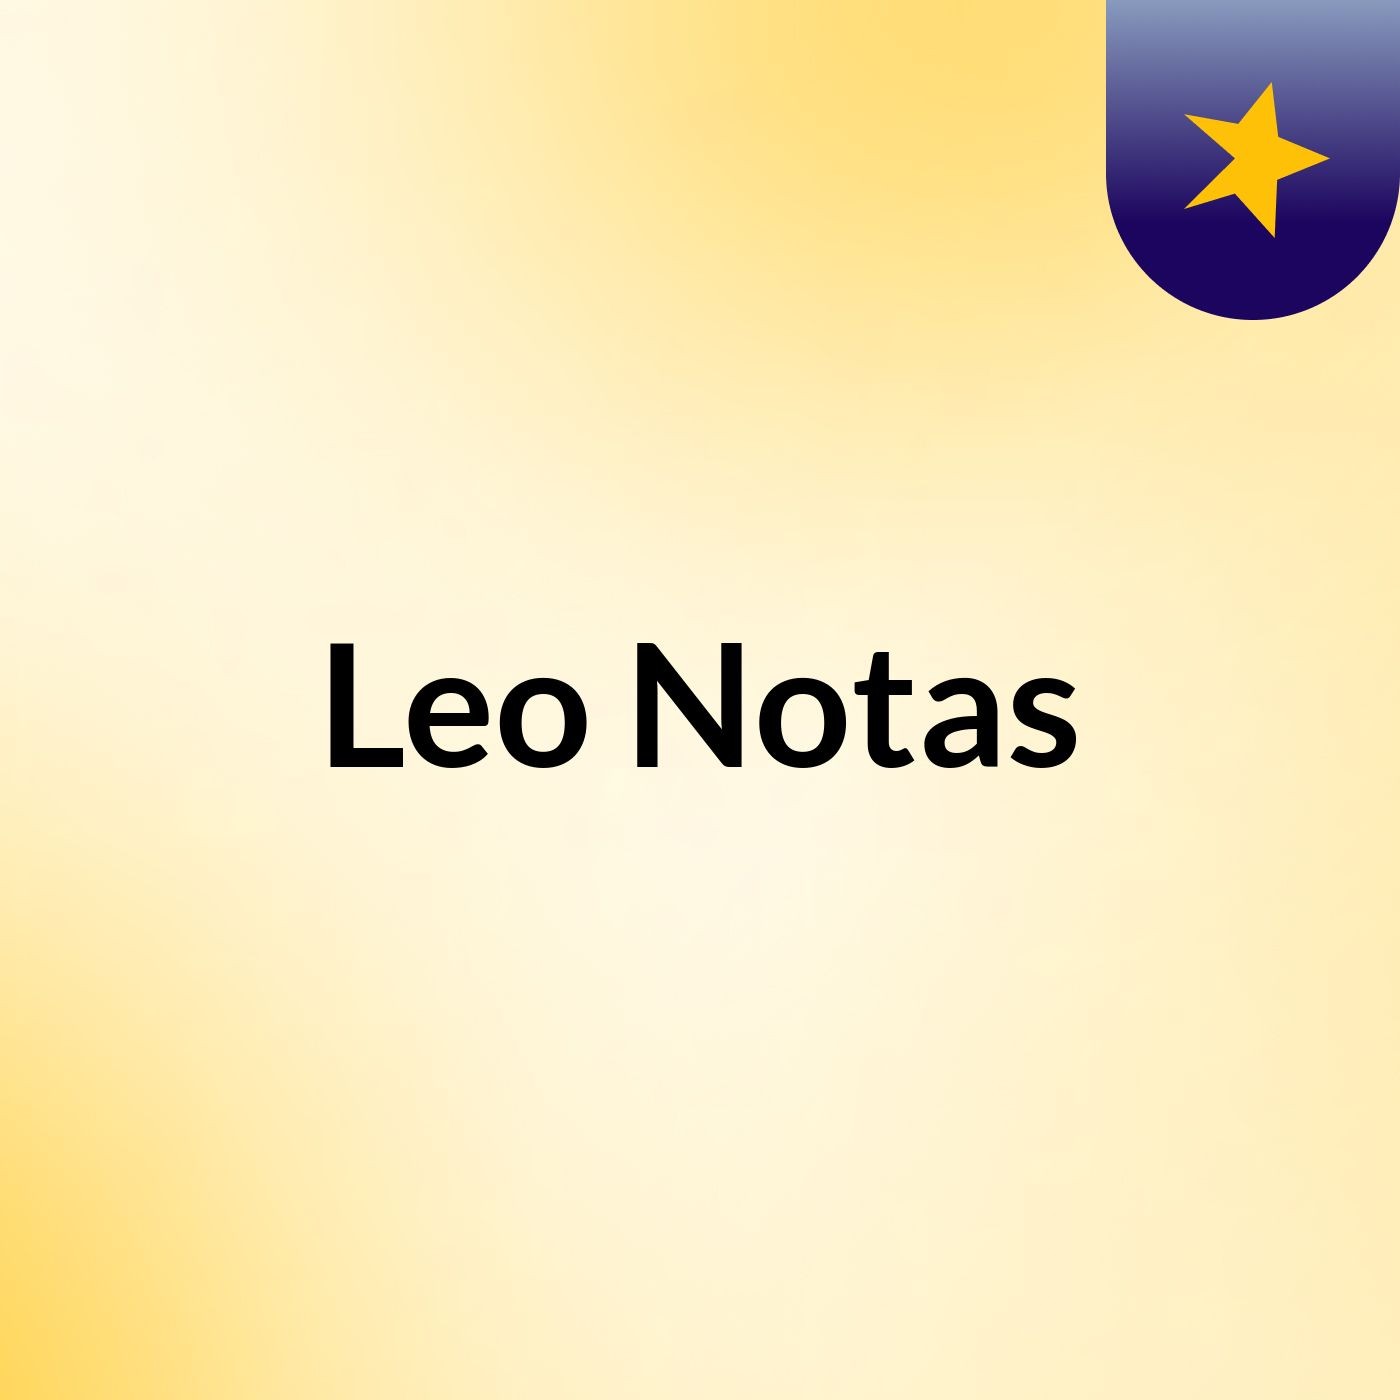 Leo Notas